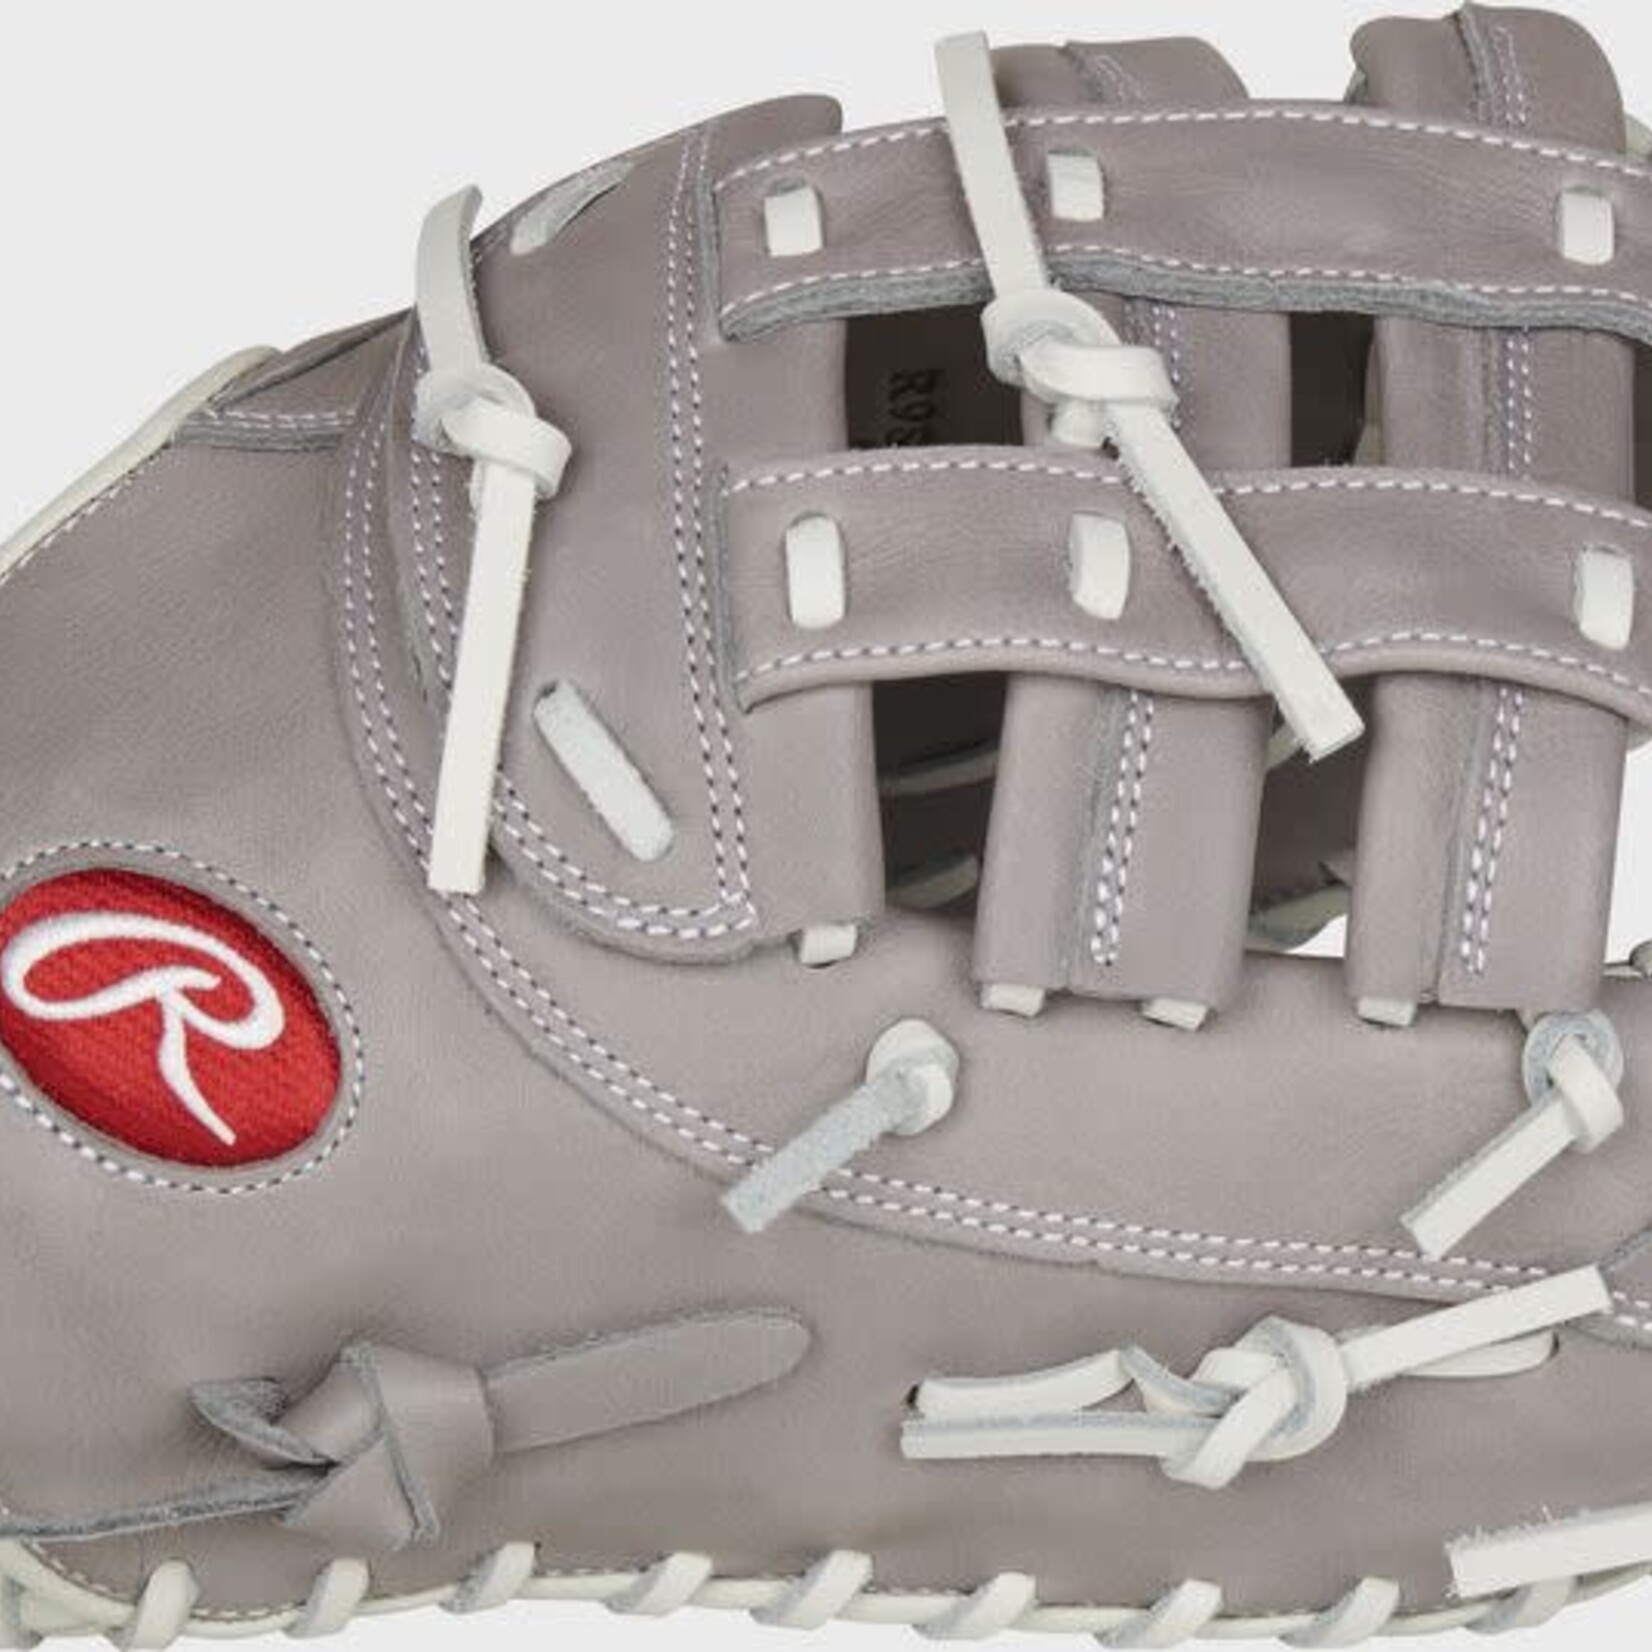 Rawlings Rawlings Baseball Glove, R9 Softball Series R9SBFBM, 12.5”, Reg, First Base Mitt